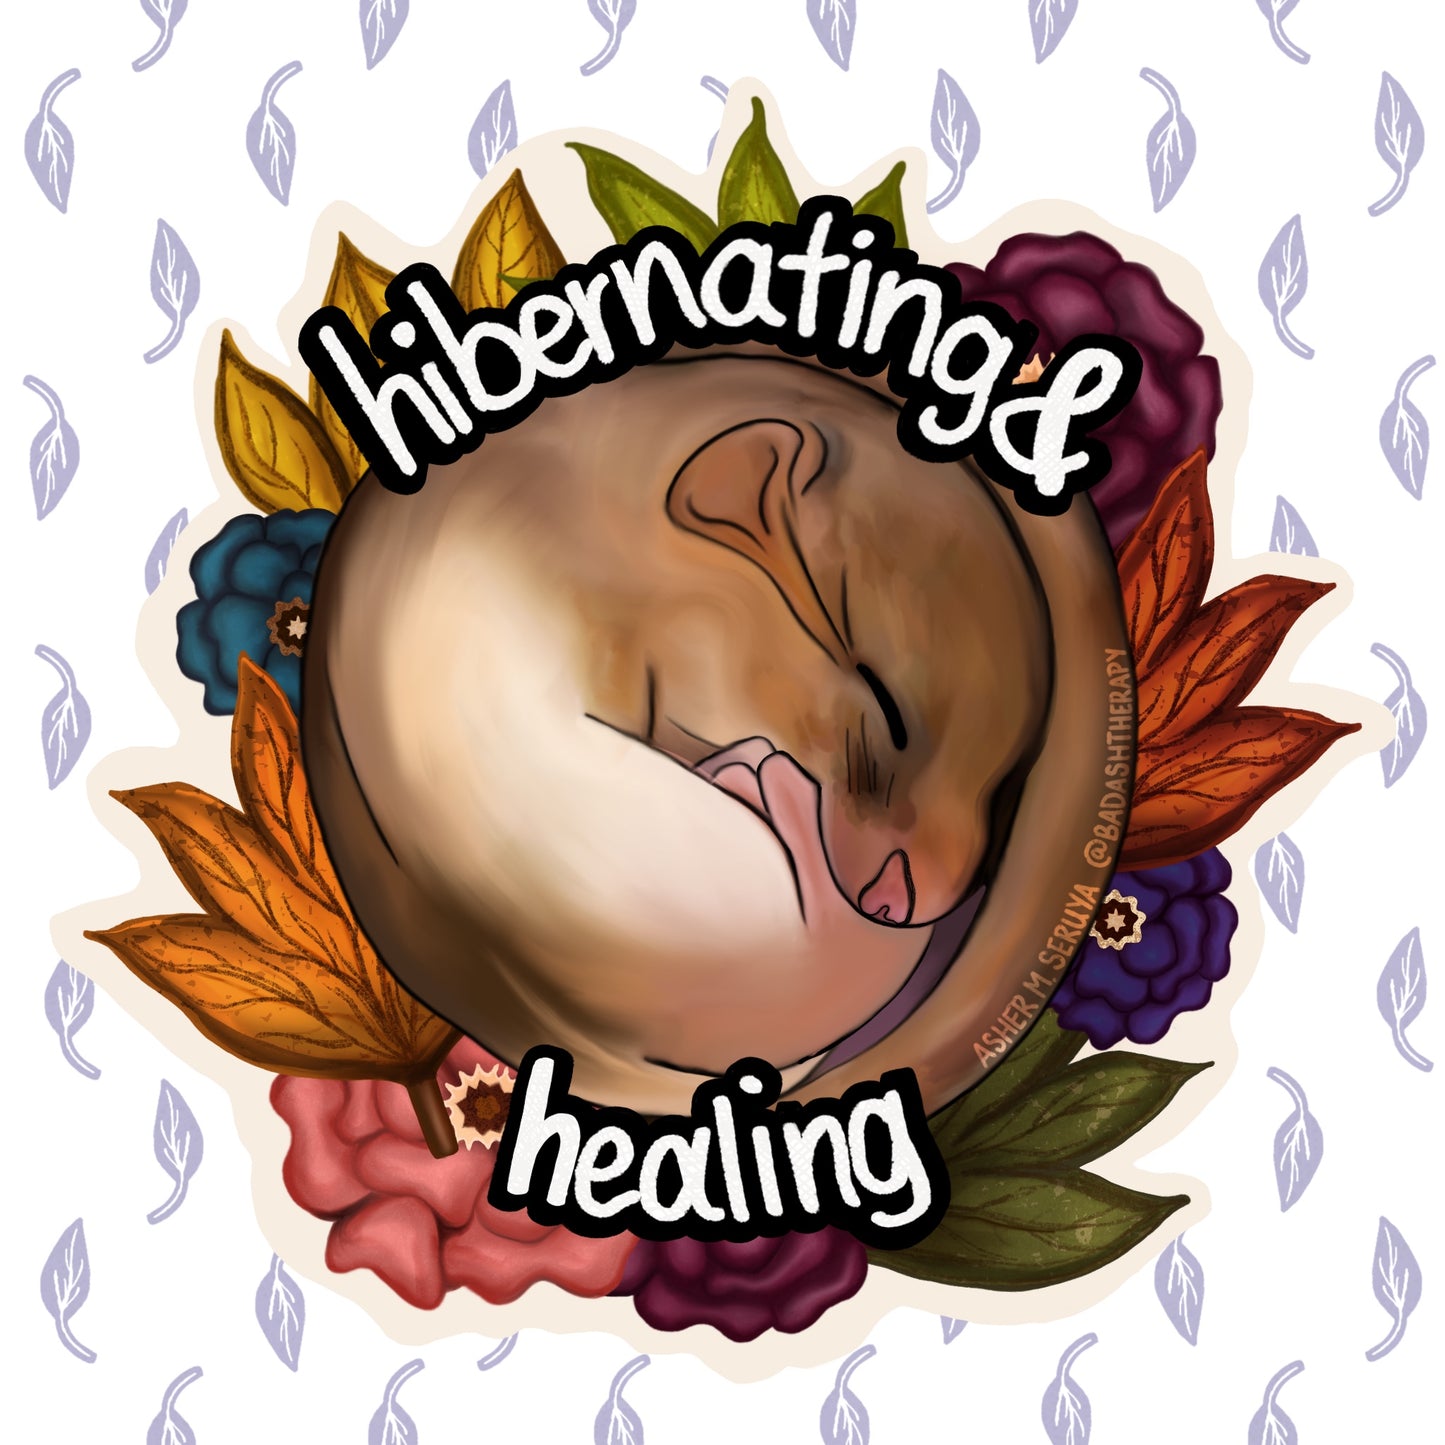 Hibernating & Healing